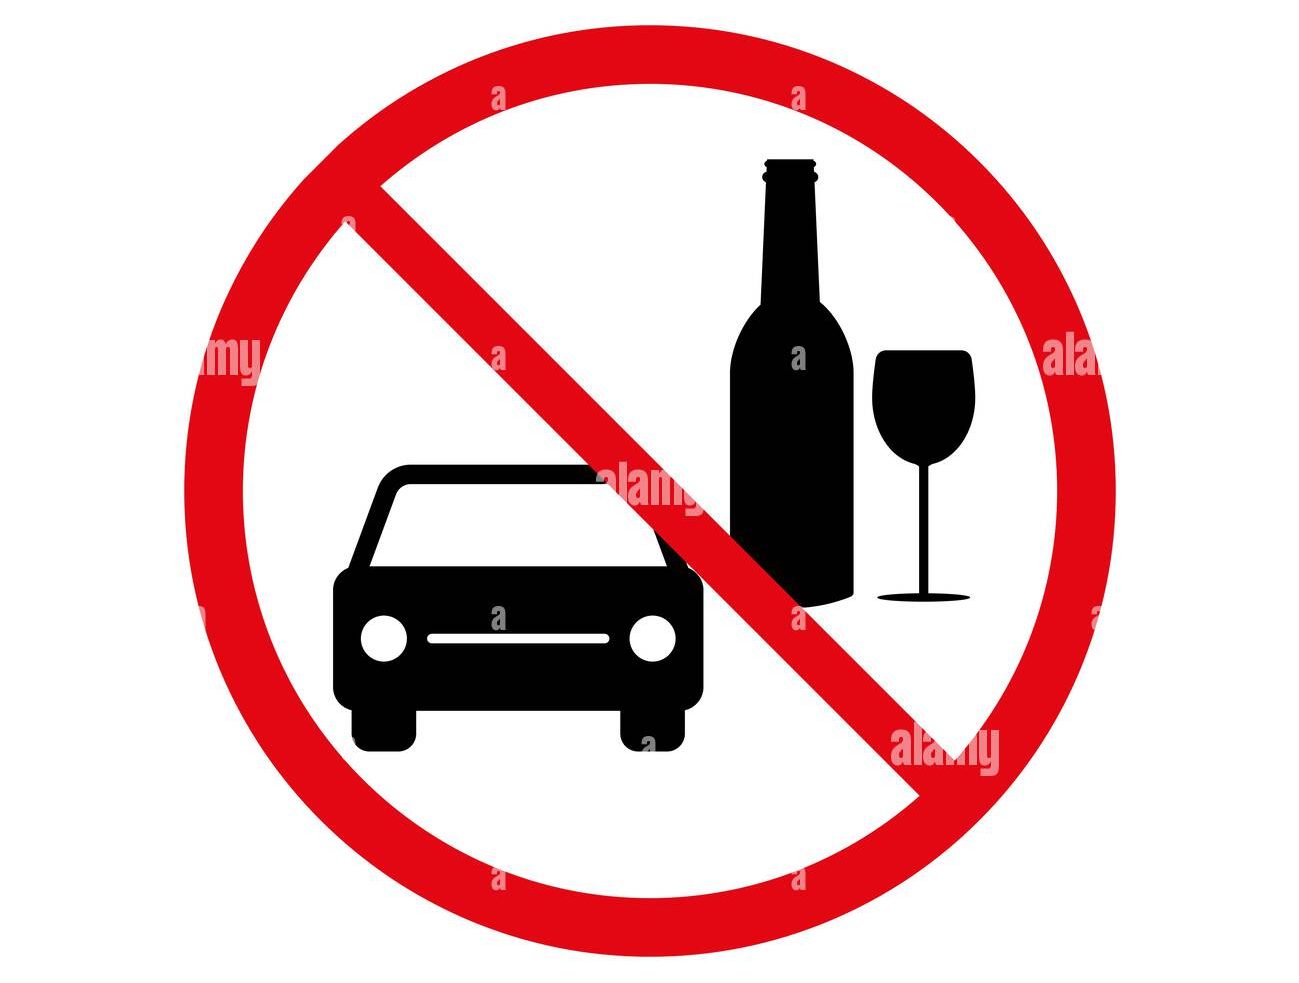 Conducir sobrio: La herramienta esencial del alcoholímetro certificado